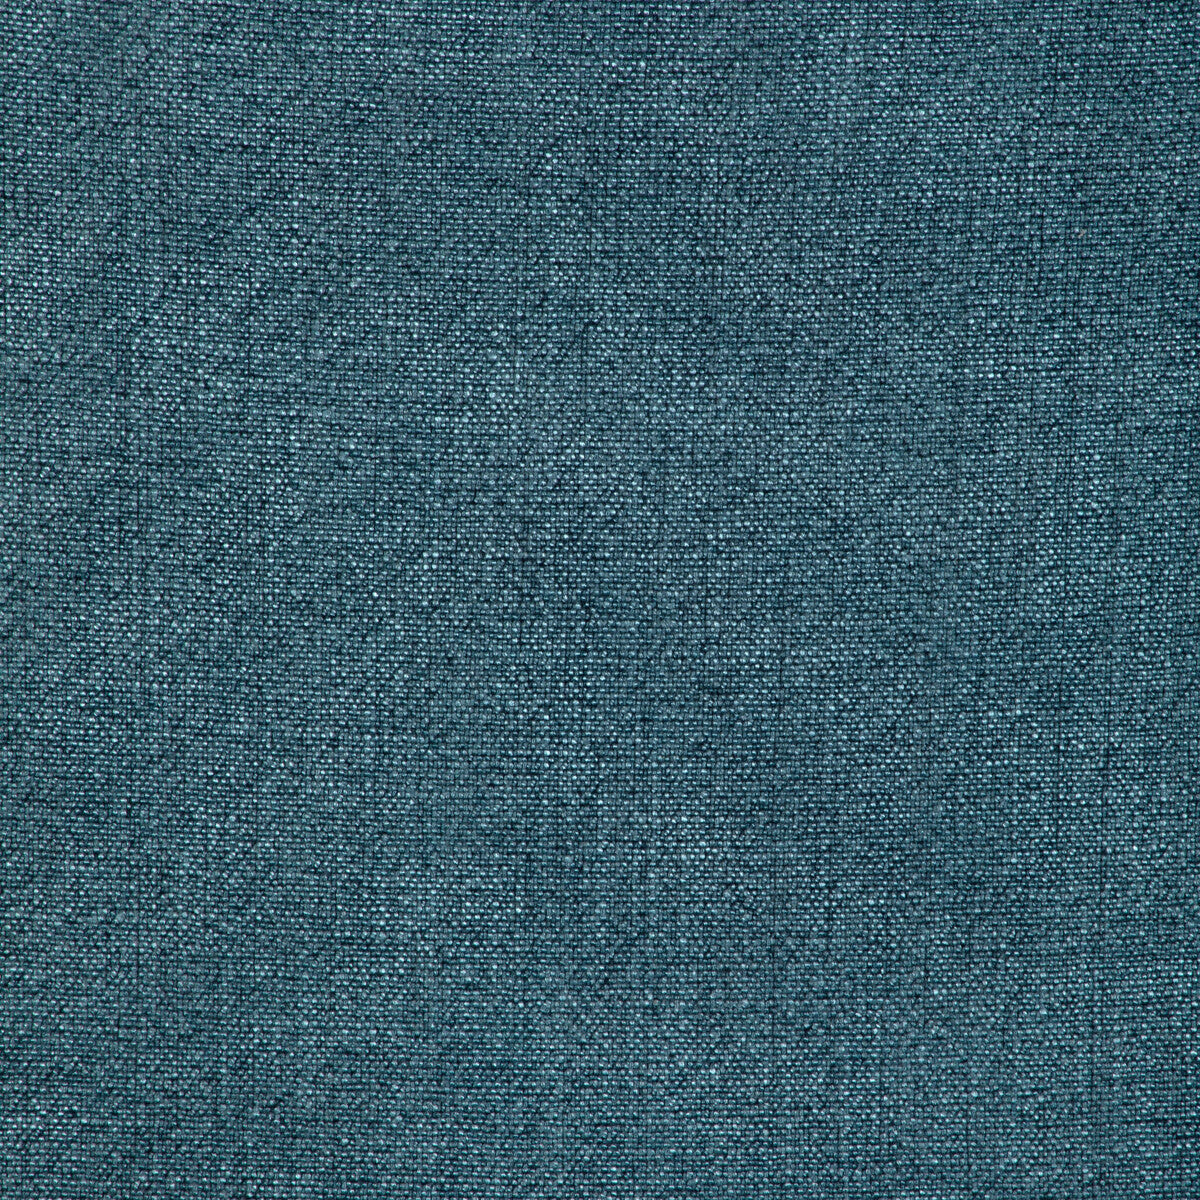 Kravet Basics fabric in 35189-313 color - pattern 35189.313.0 - by Kravet Basics